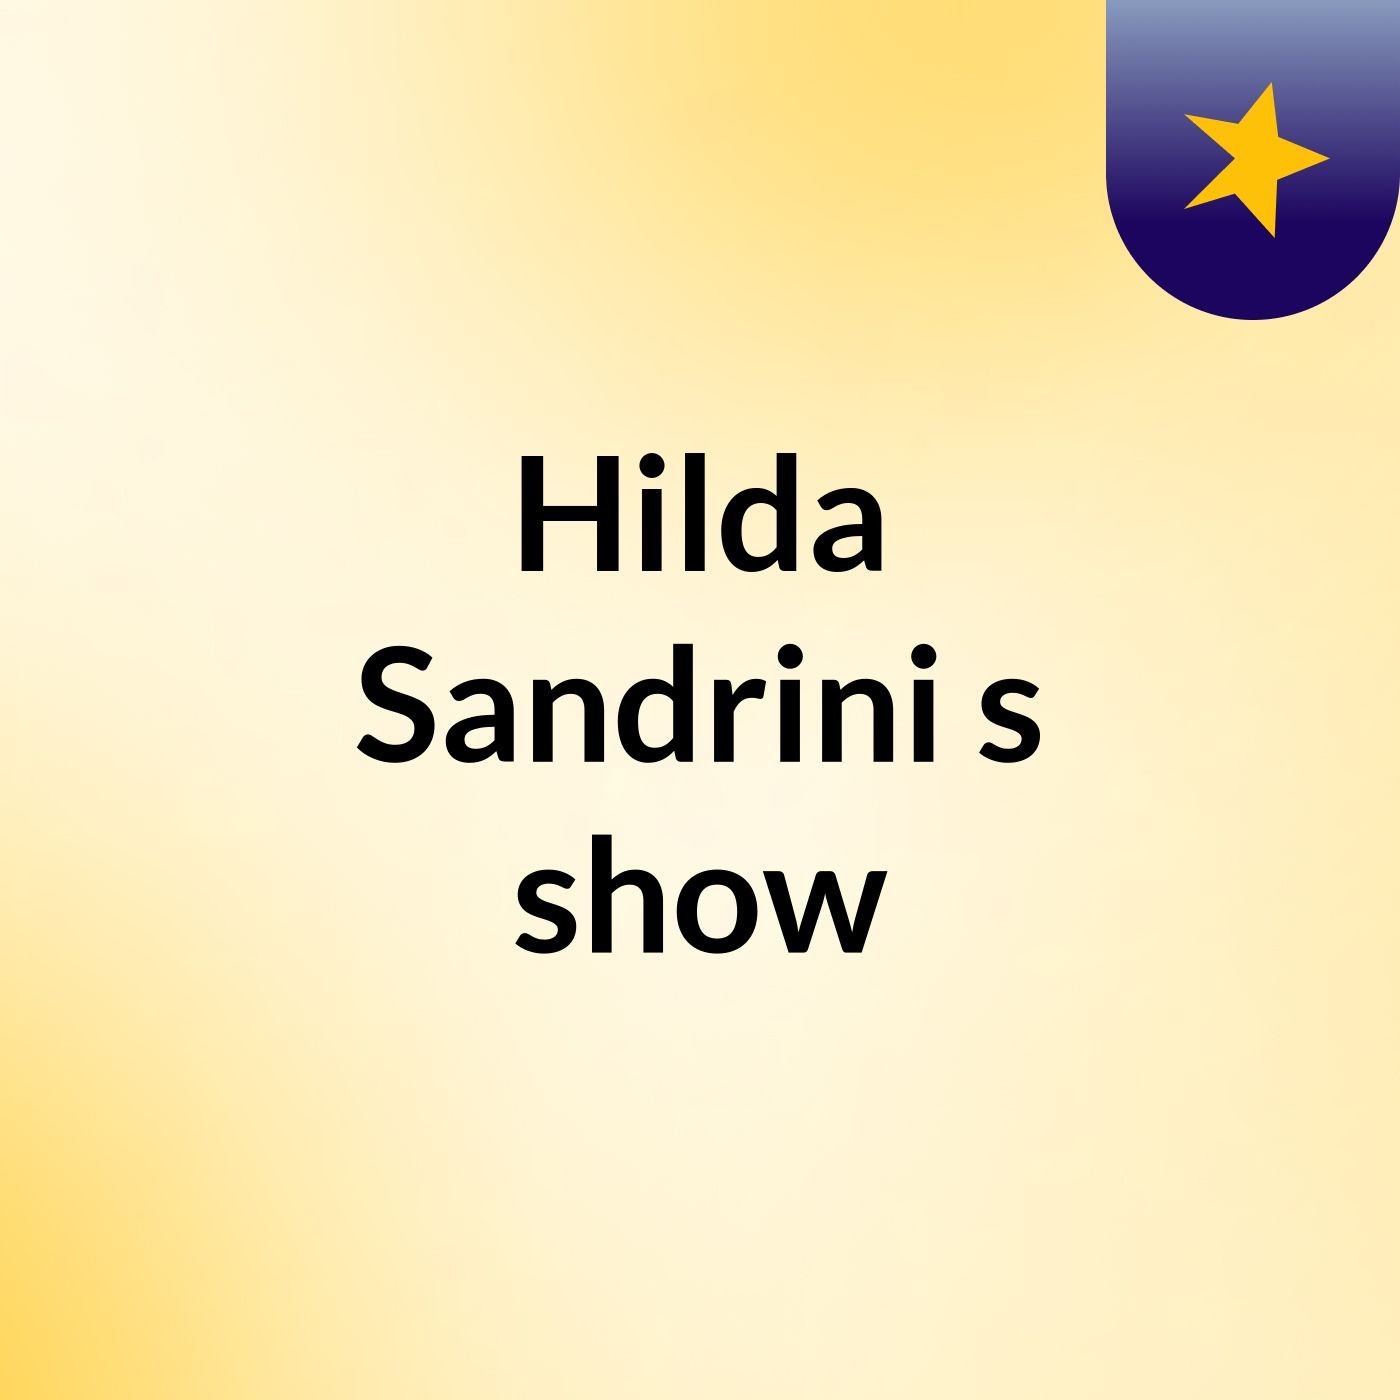 Hilda Sandrini's show